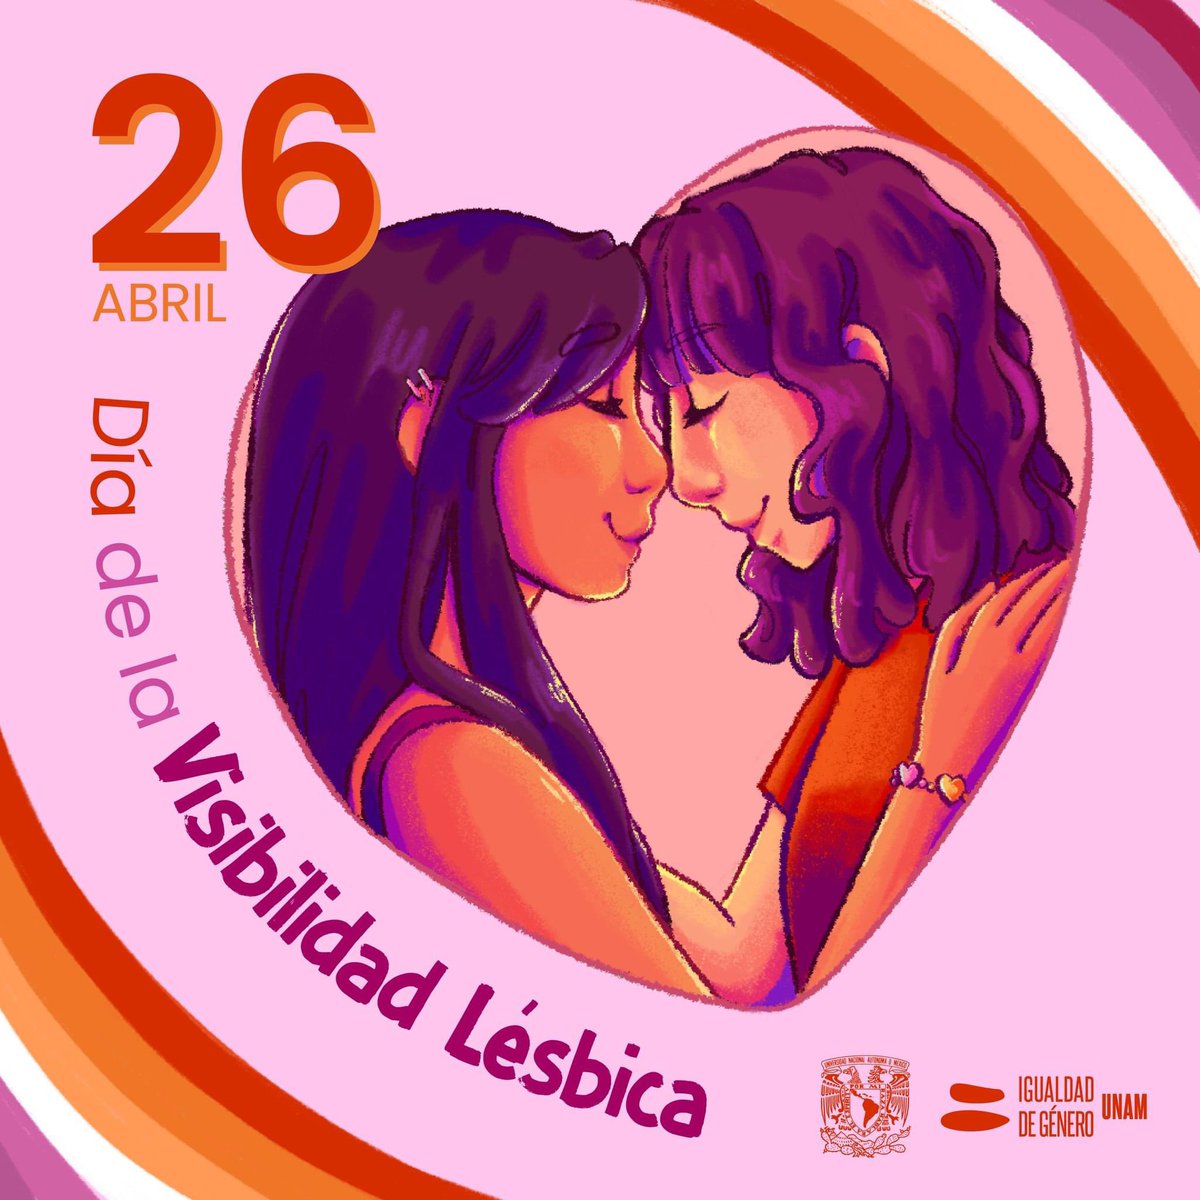 Hoy 26 de abril se conmemora el Día de la Visibilidad Lésbica. #DíaDeLaVisibilidadLésbica #LesbianVisabilityDay #lesbianas